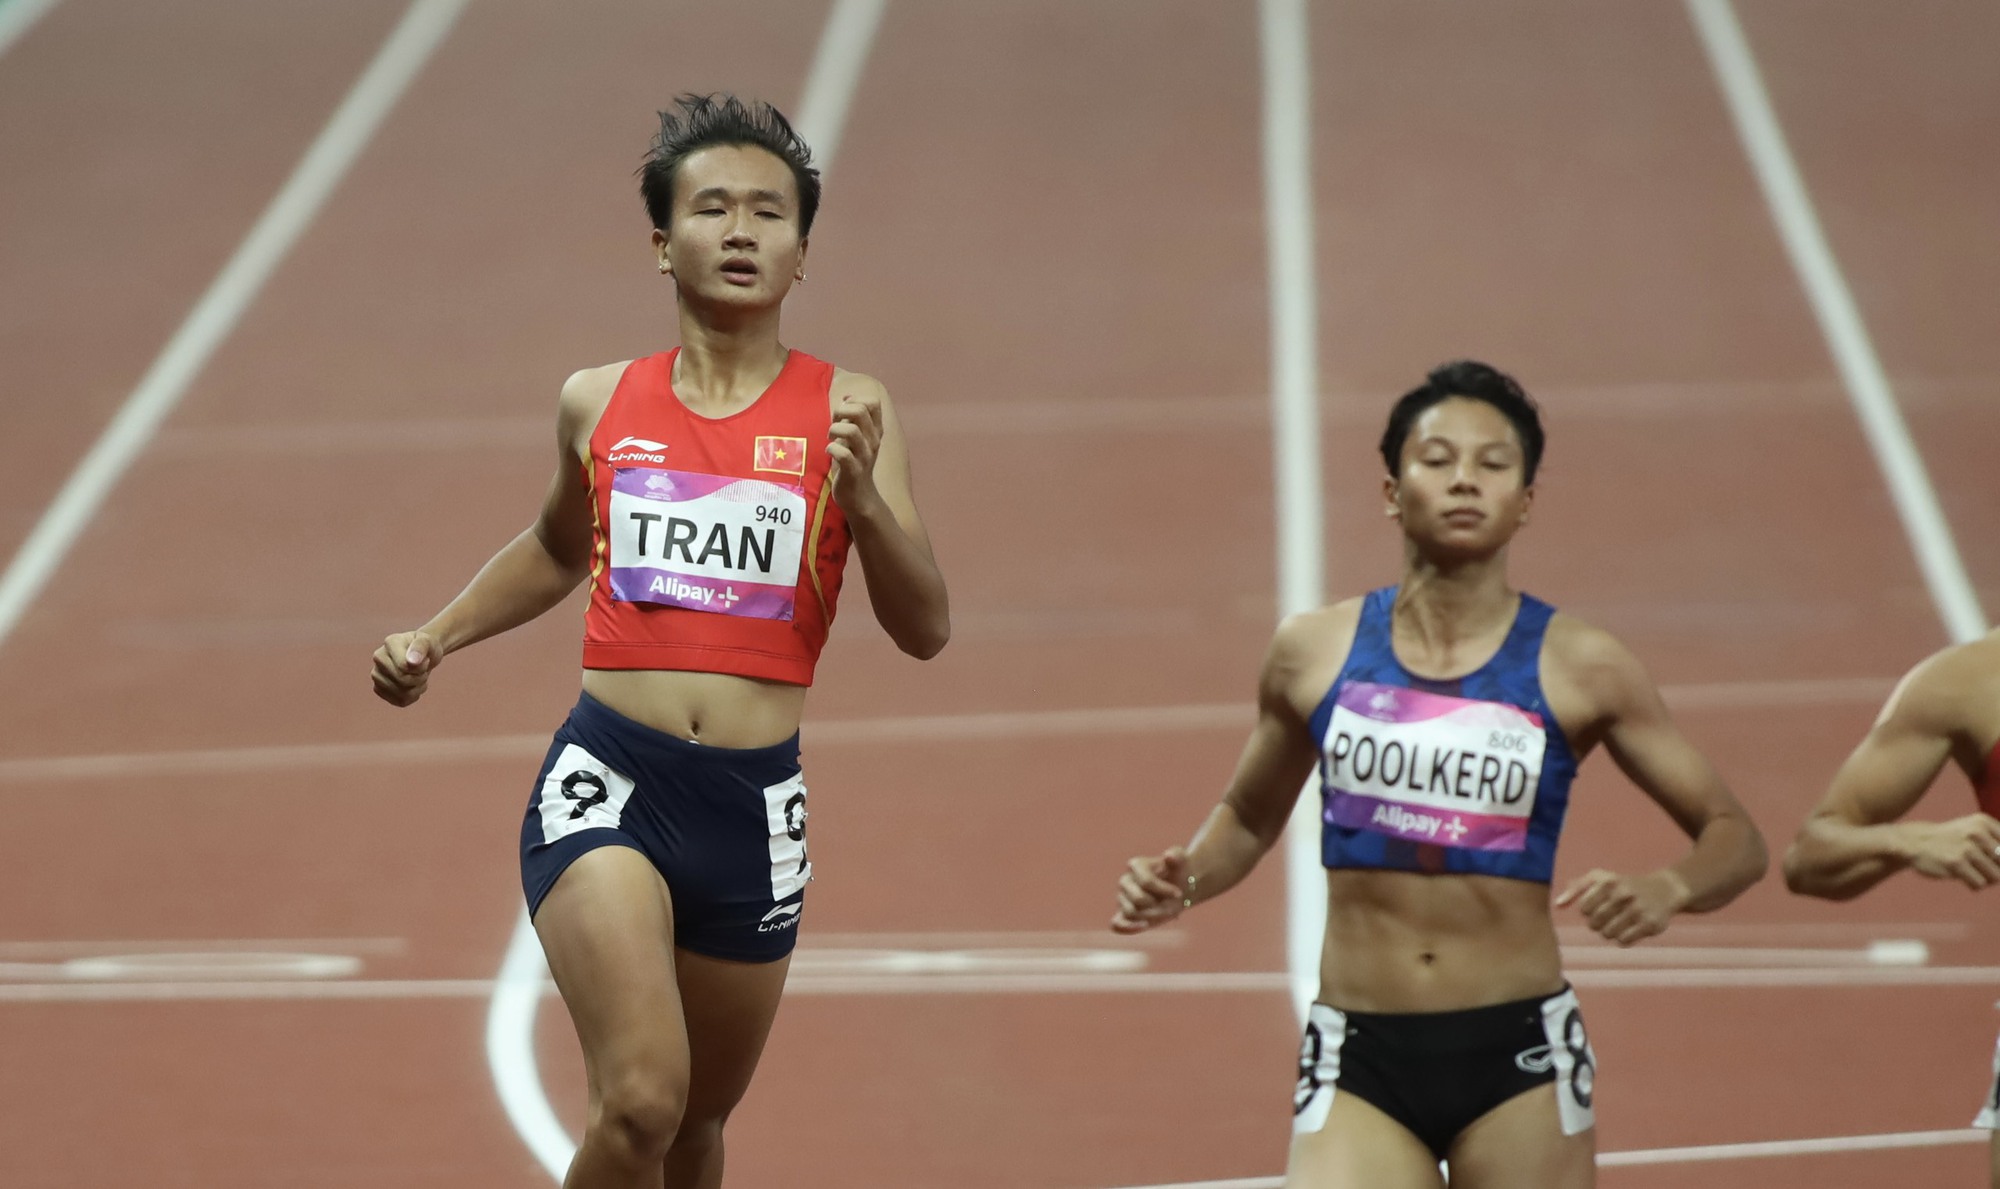 ASIAD 19 ngày 30-9: Trần Thị Nhi Yến xếp hạng 8 cự ly 100m nữ - Ảnh 5.